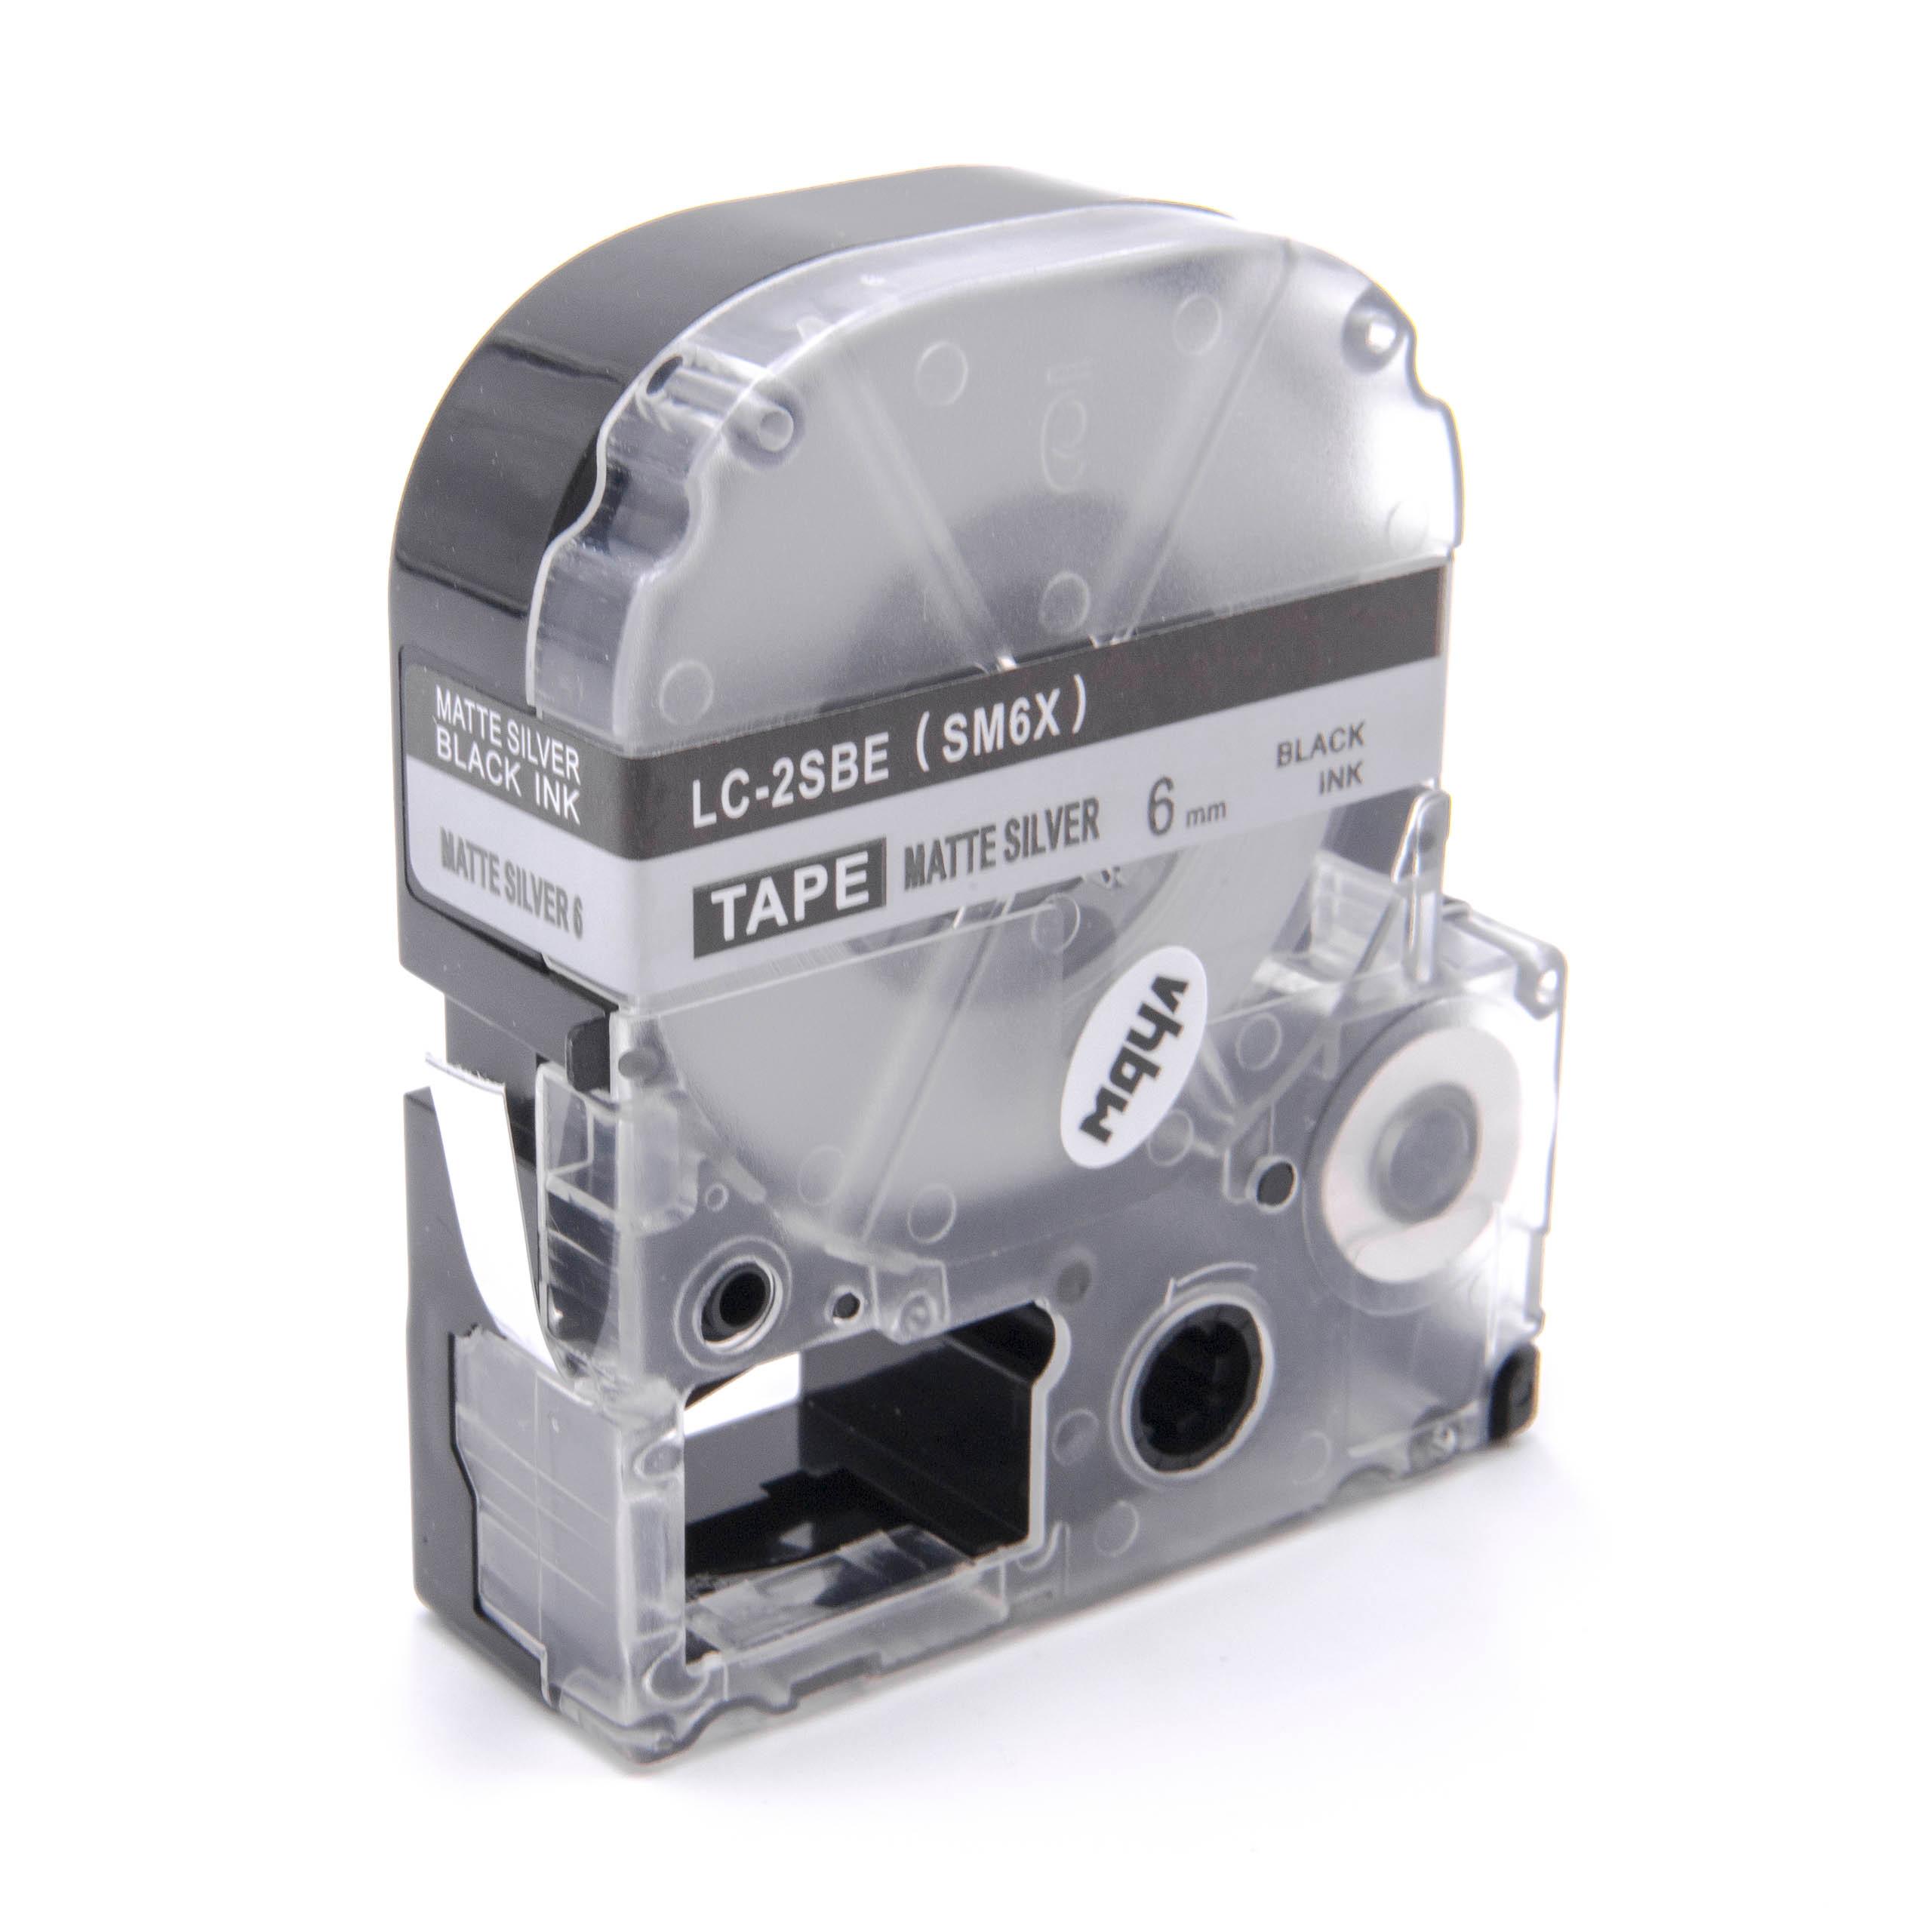 Cassetta nastro sostituisce Epson LC-2SBE per etichettatrice Epson 6mm nero su argentato